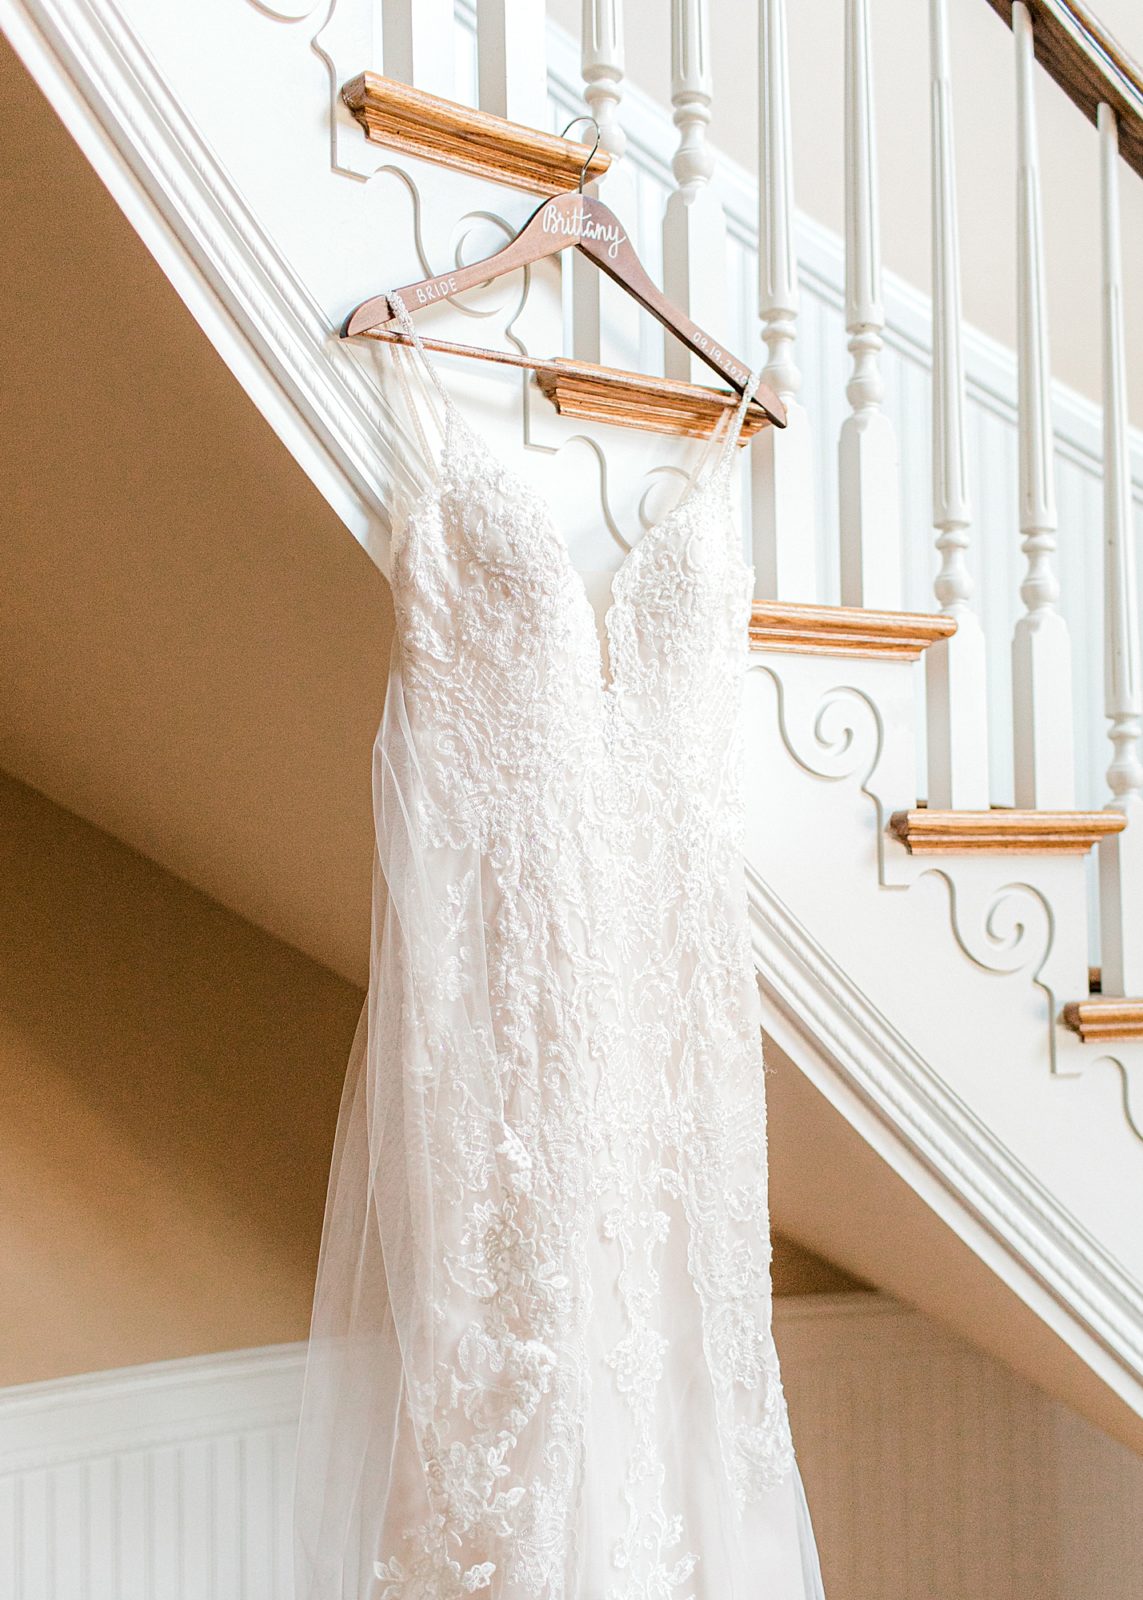 Wedding dress hanging up in Irvine Estates stairwell. 